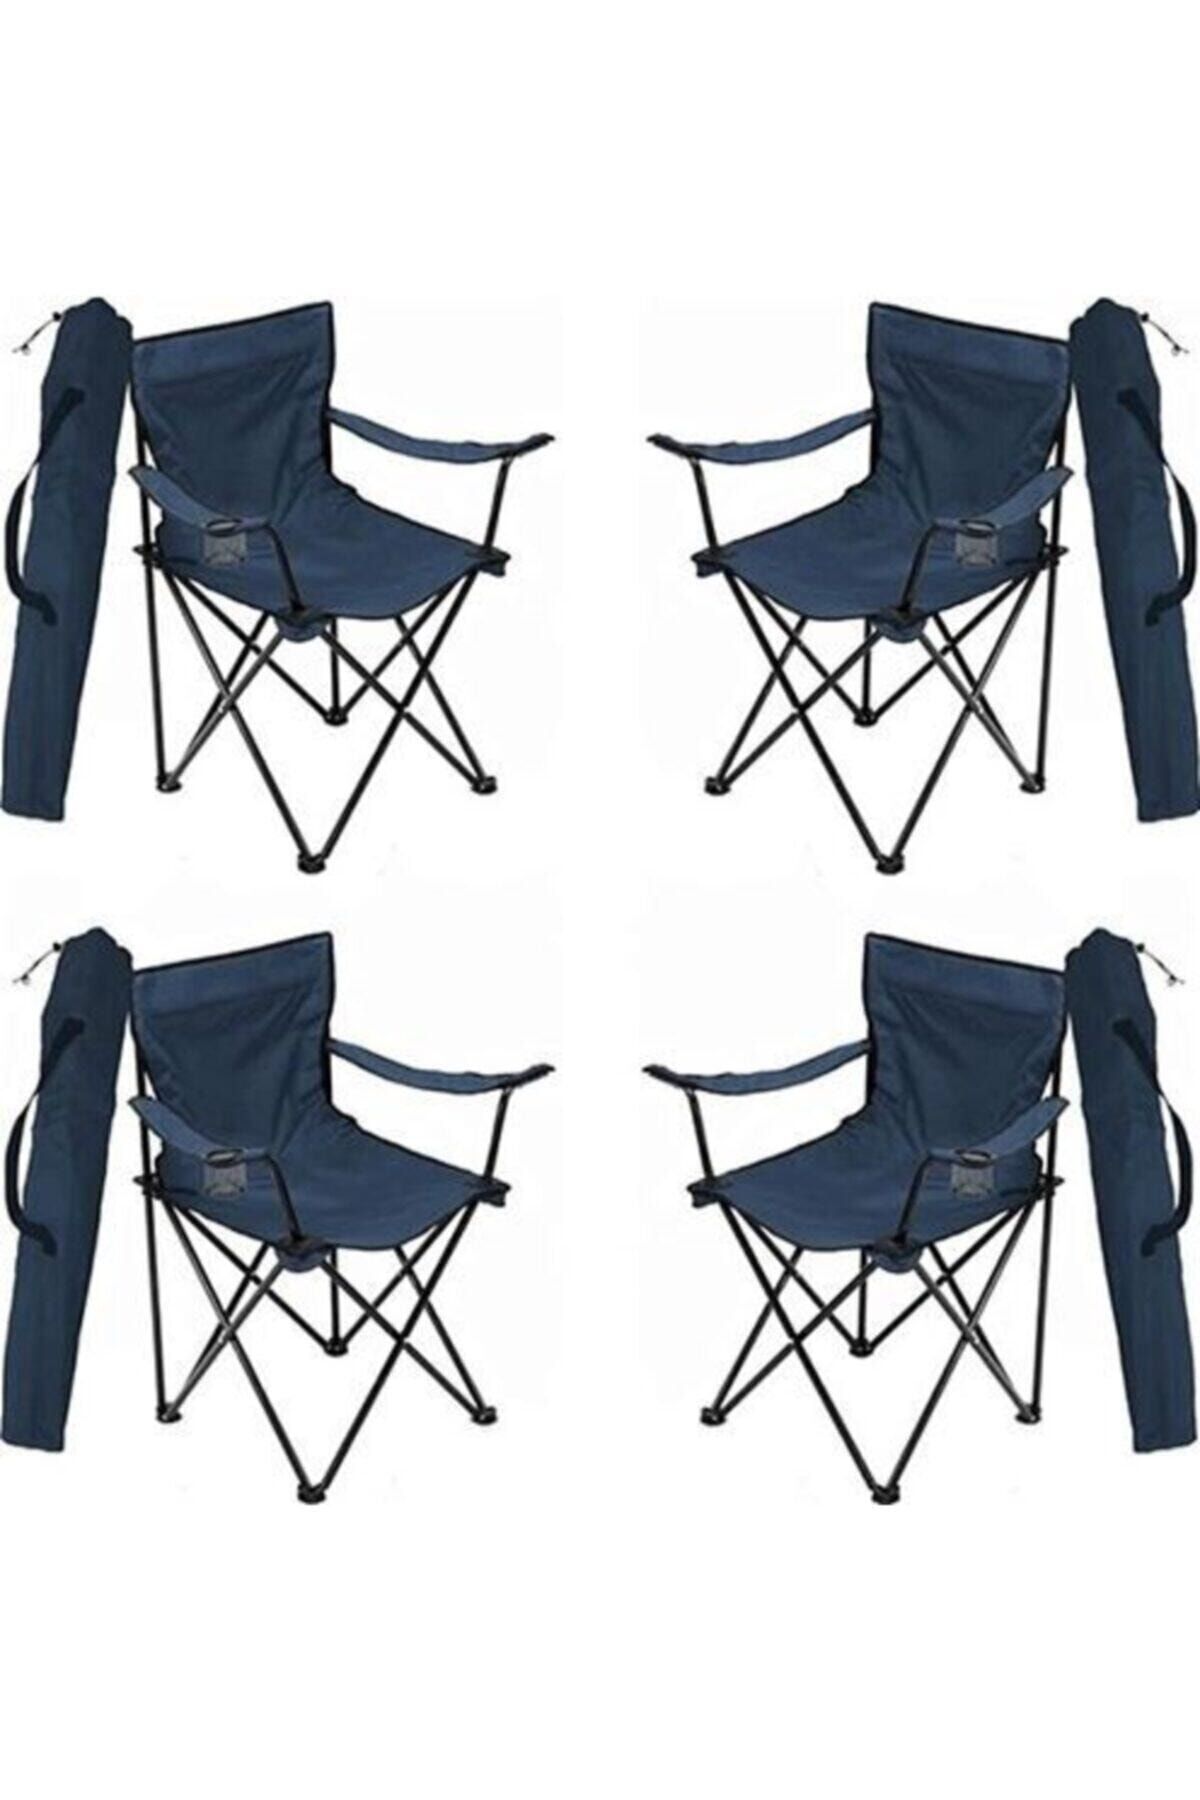 Toysan Katlanır Çantalı Kamp Sandalyesi Lacivert 4 Adet